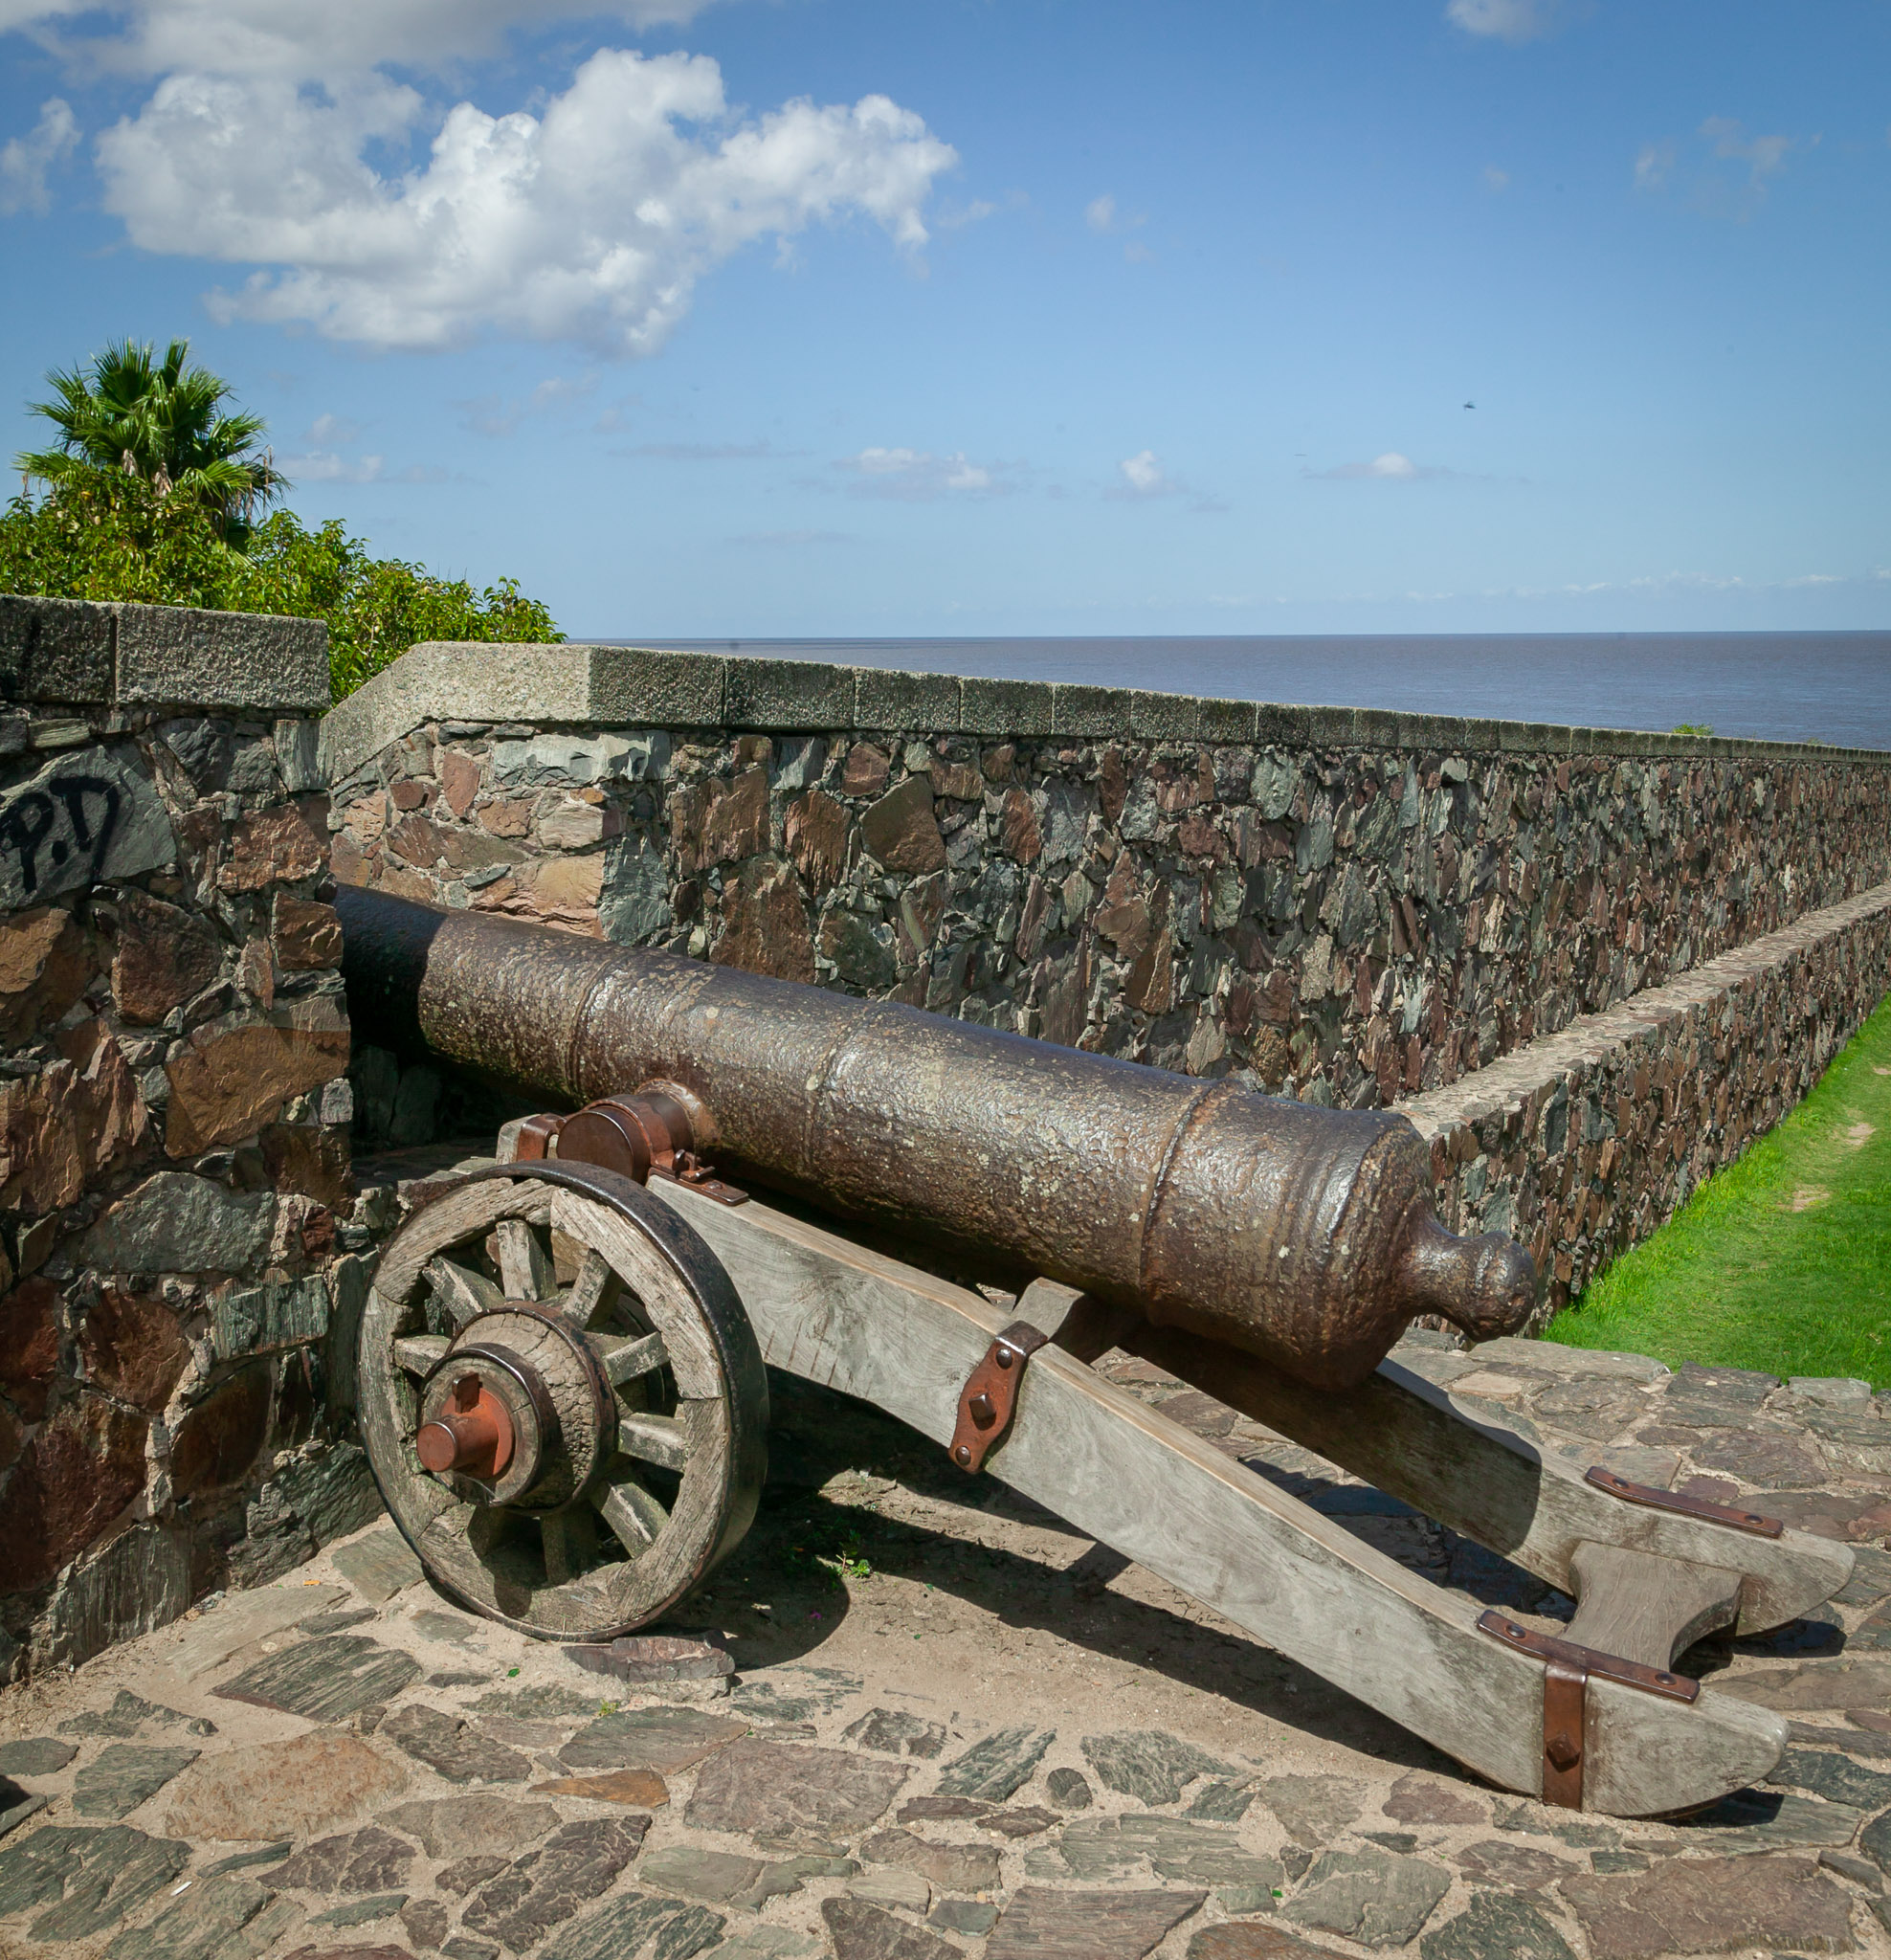 Colonia cannon